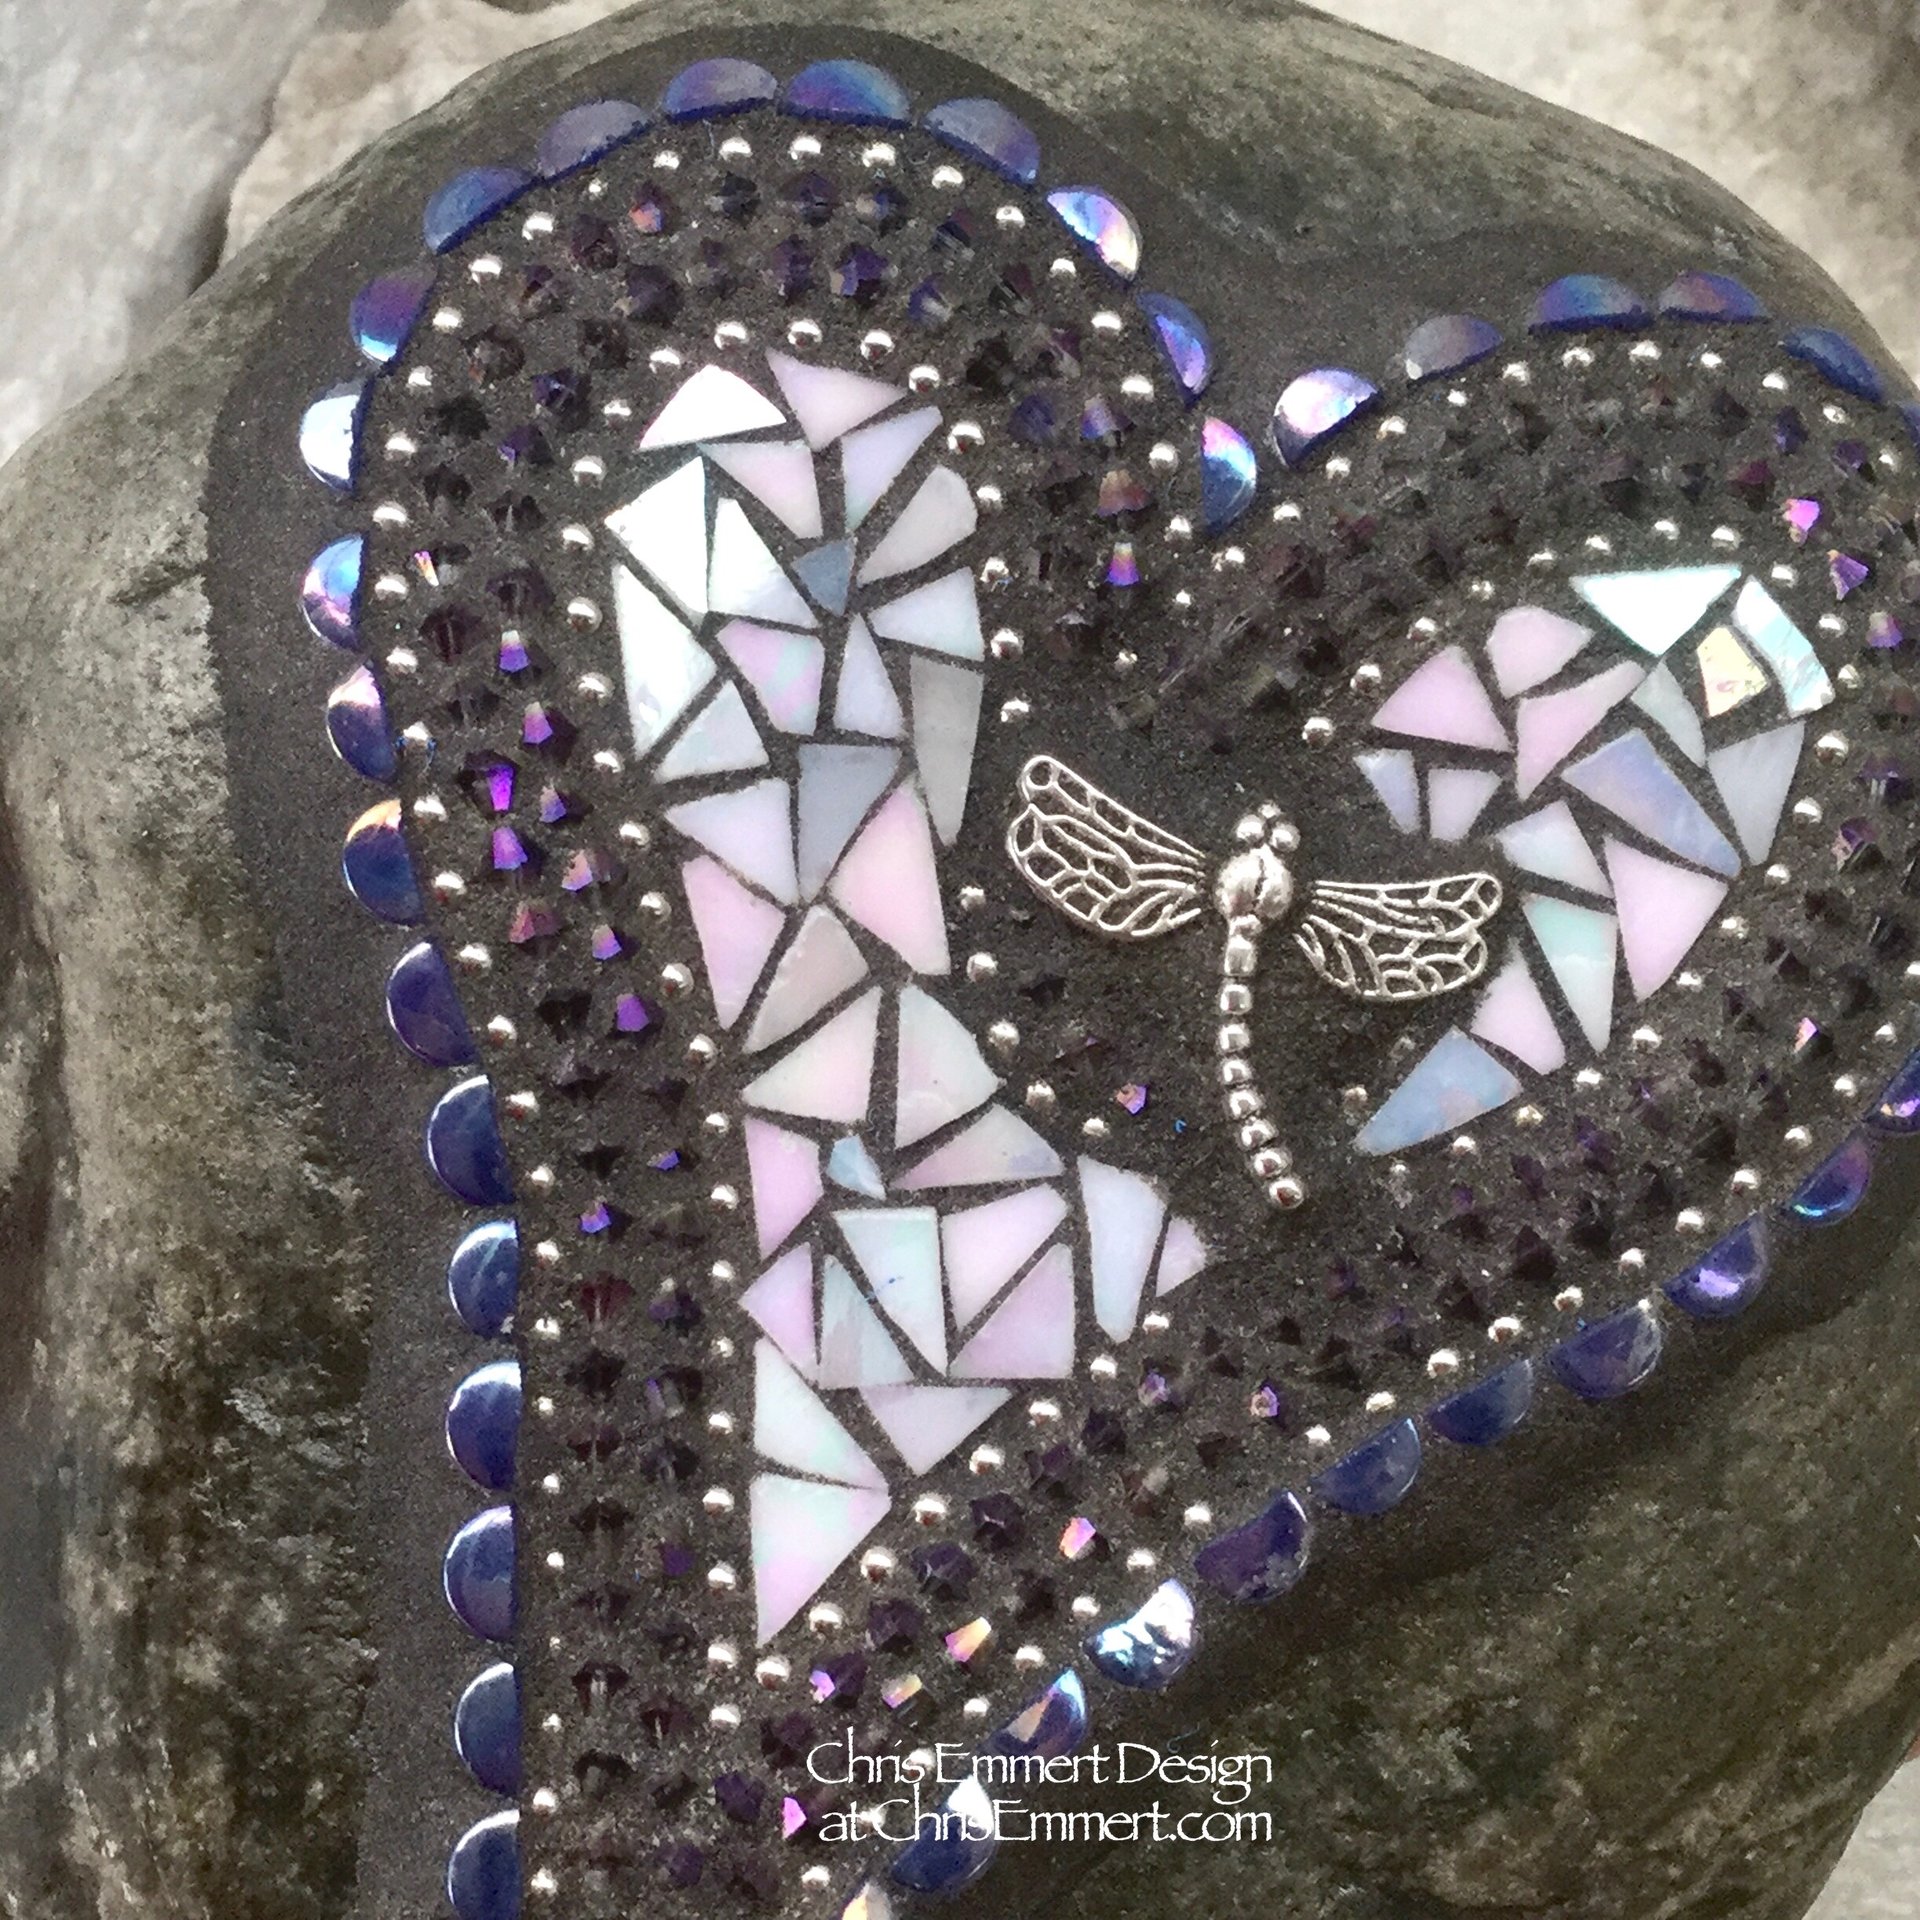 Iridescent White Dragonfly Mosaic Heart Garden Stone, GardnerGift, Garden Decor